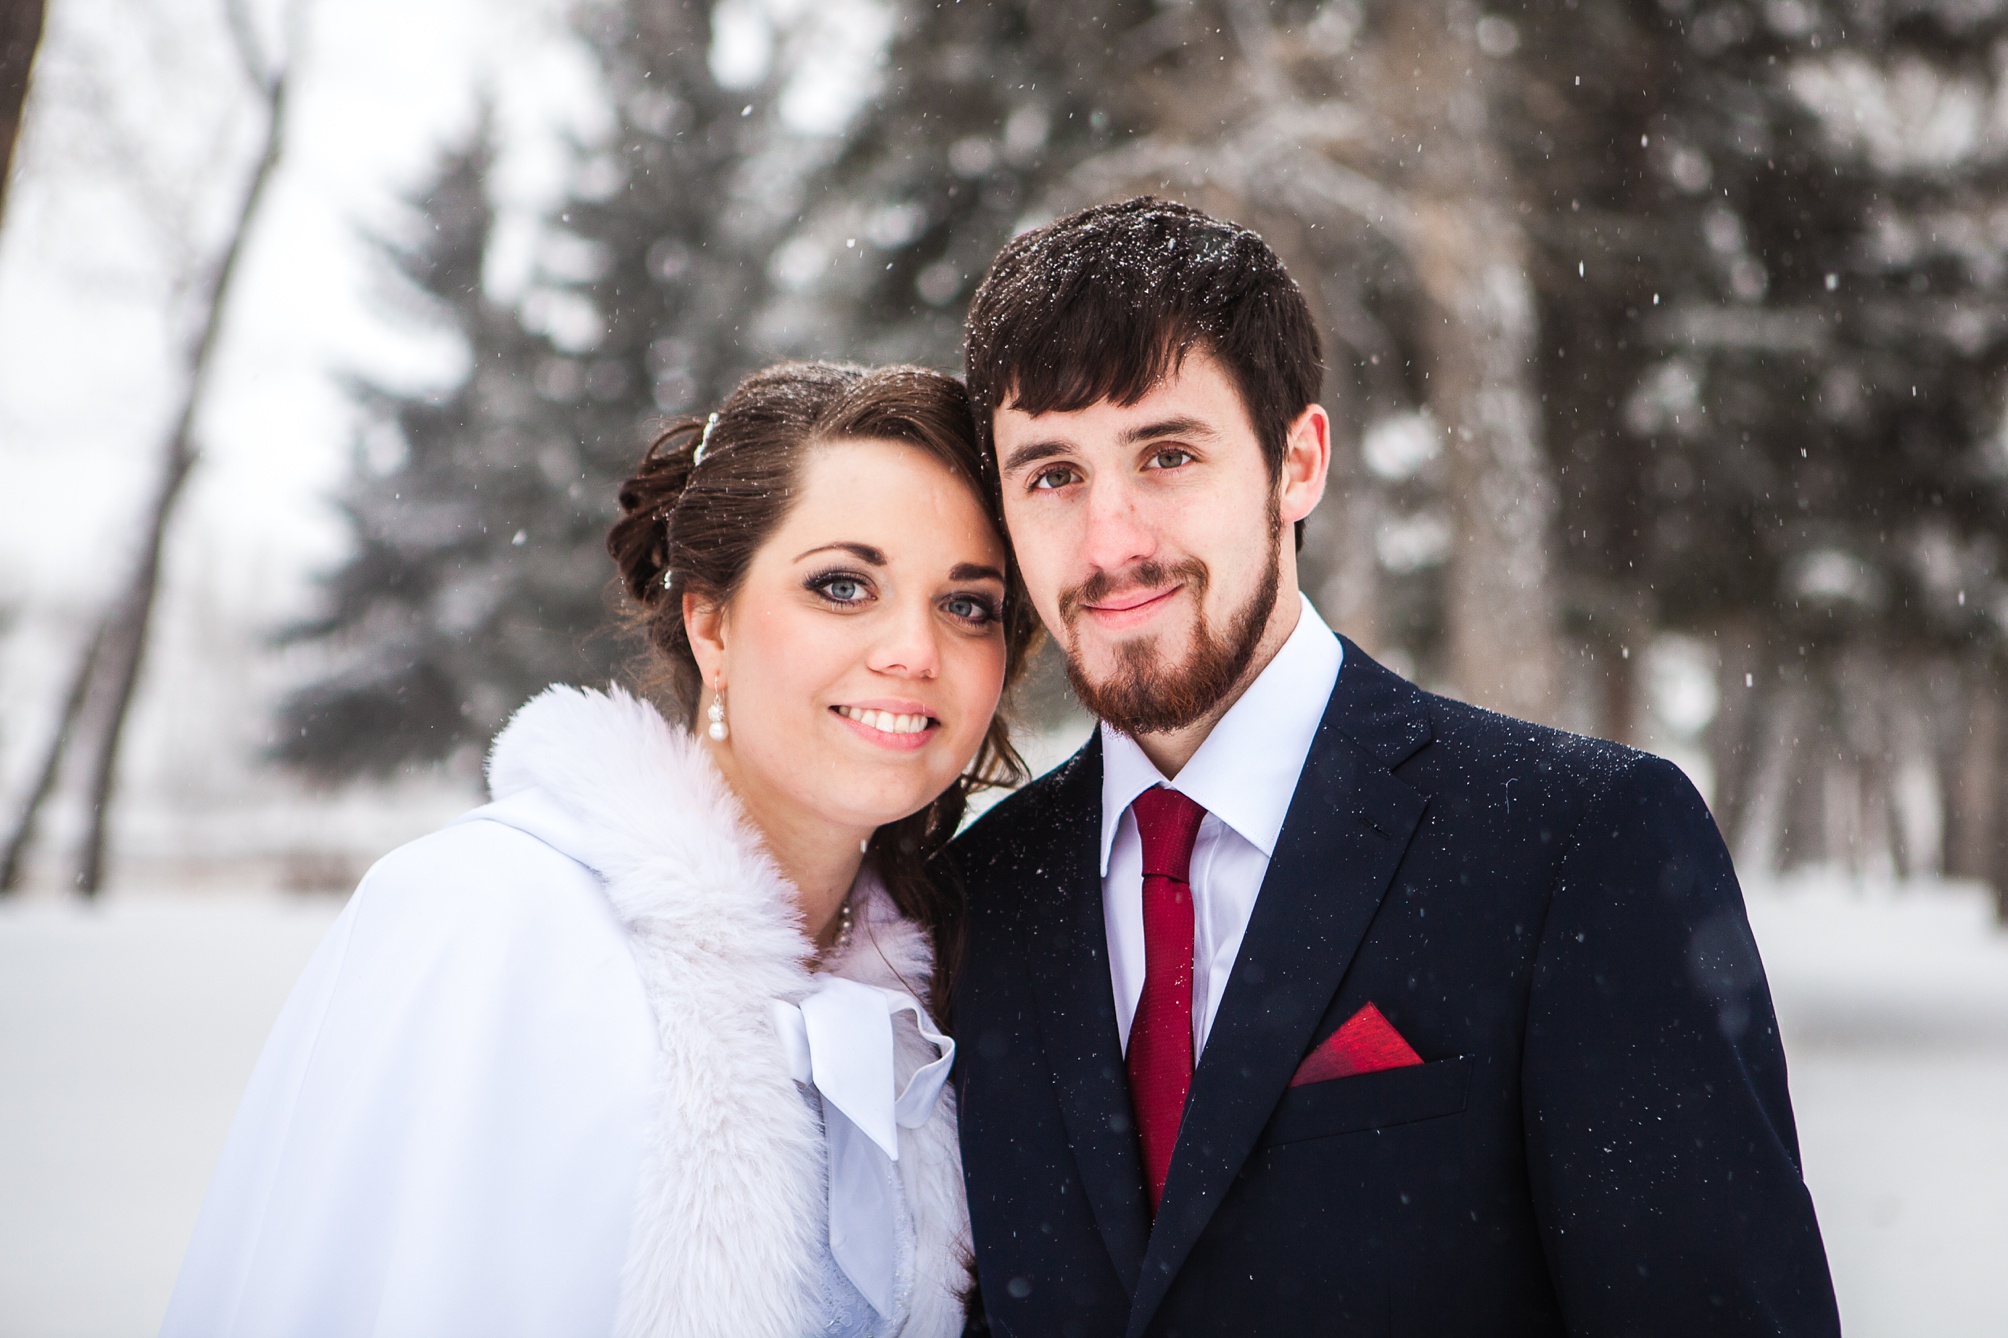 Alex and Kim's snowy winter wedding